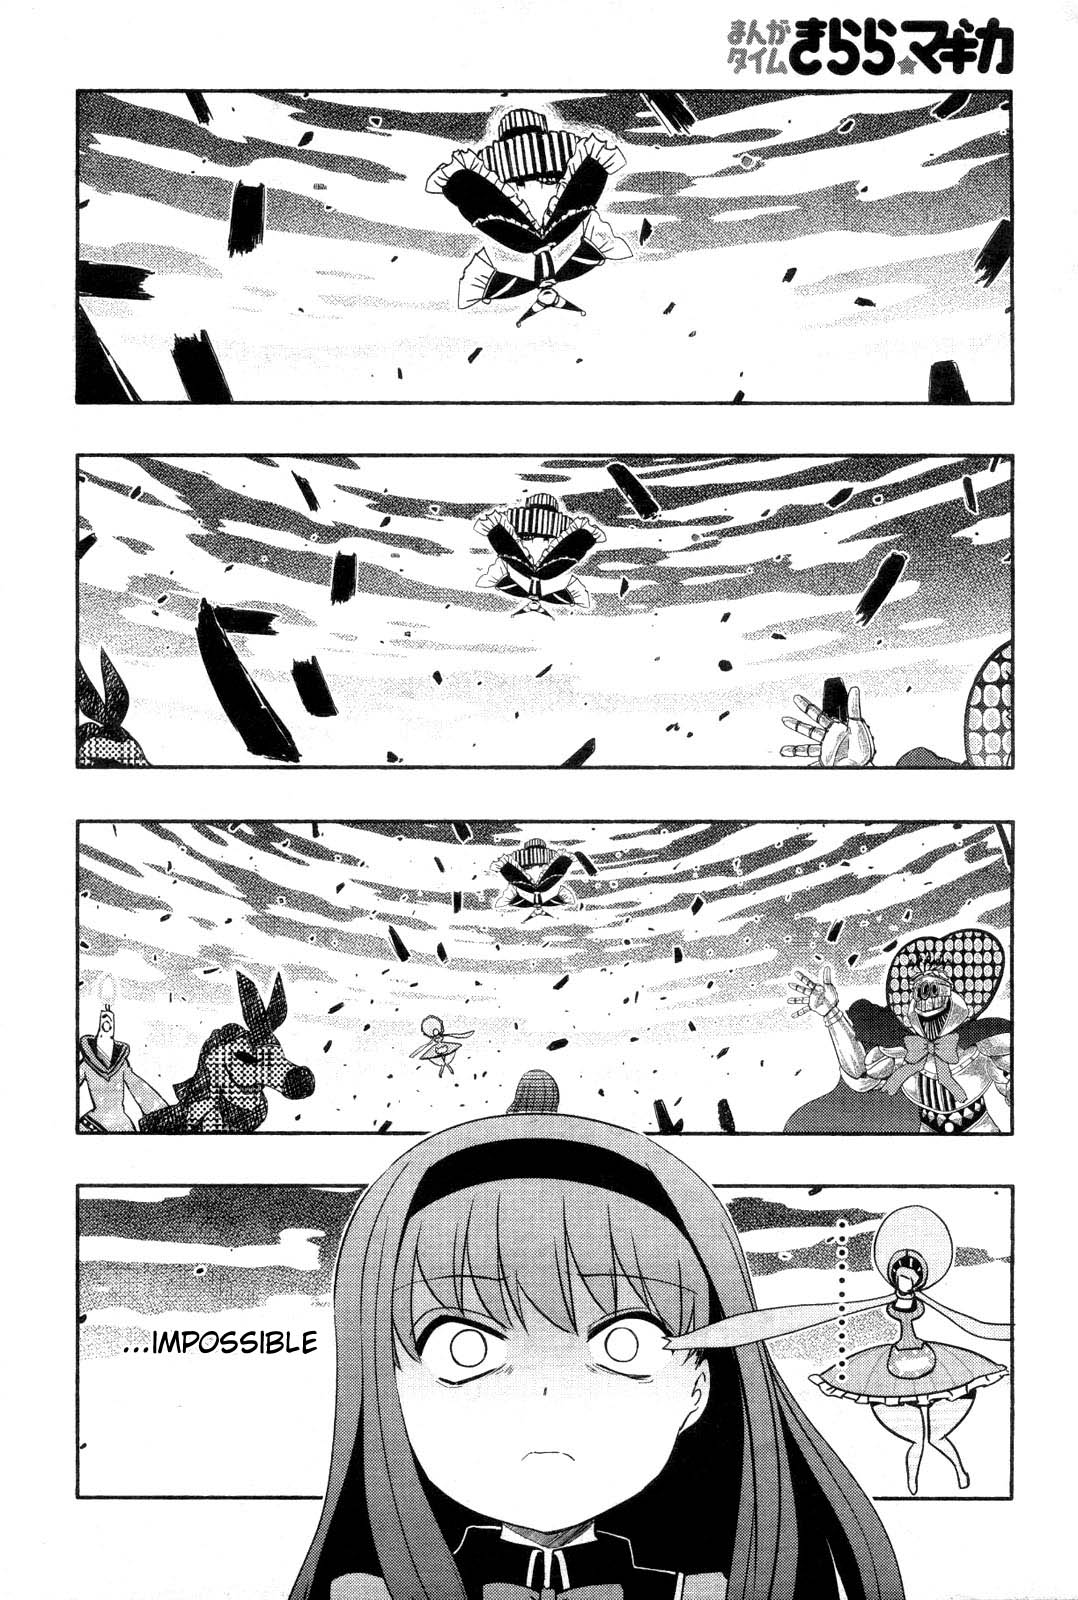 Manga Time Kirara★Magica Vol. 1 Ch. 15 "Game Over"